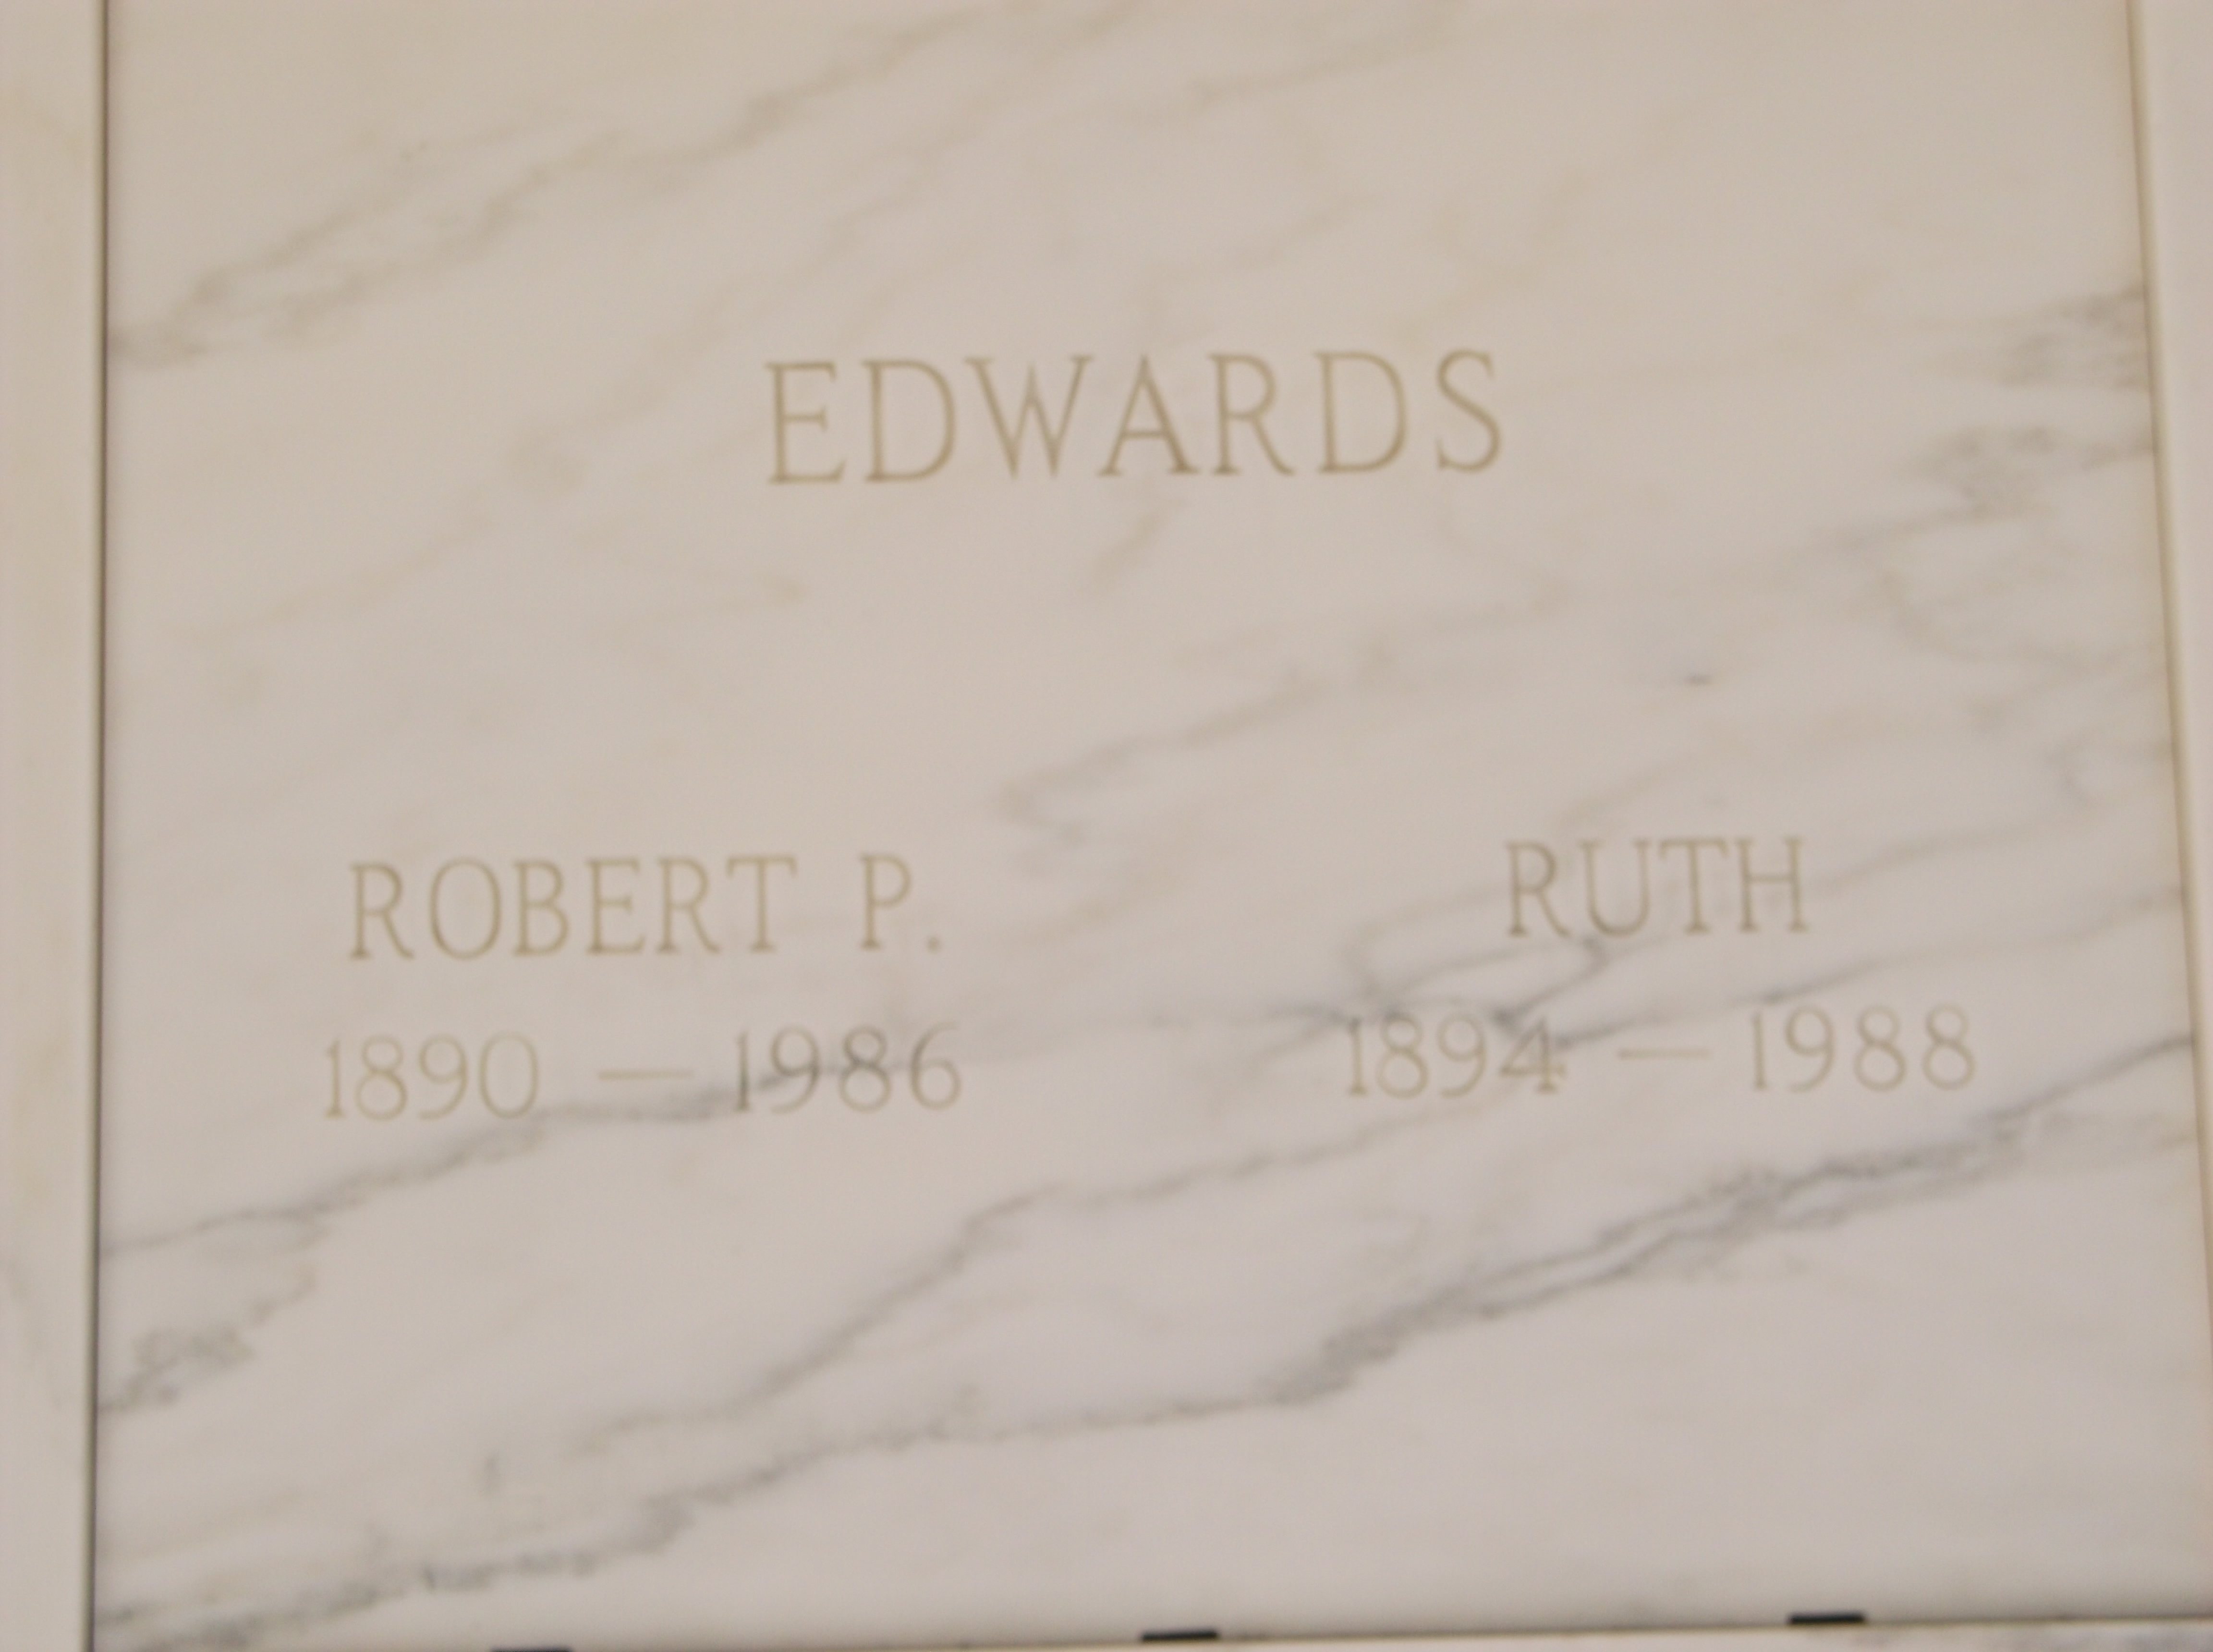 Robert P Edwards